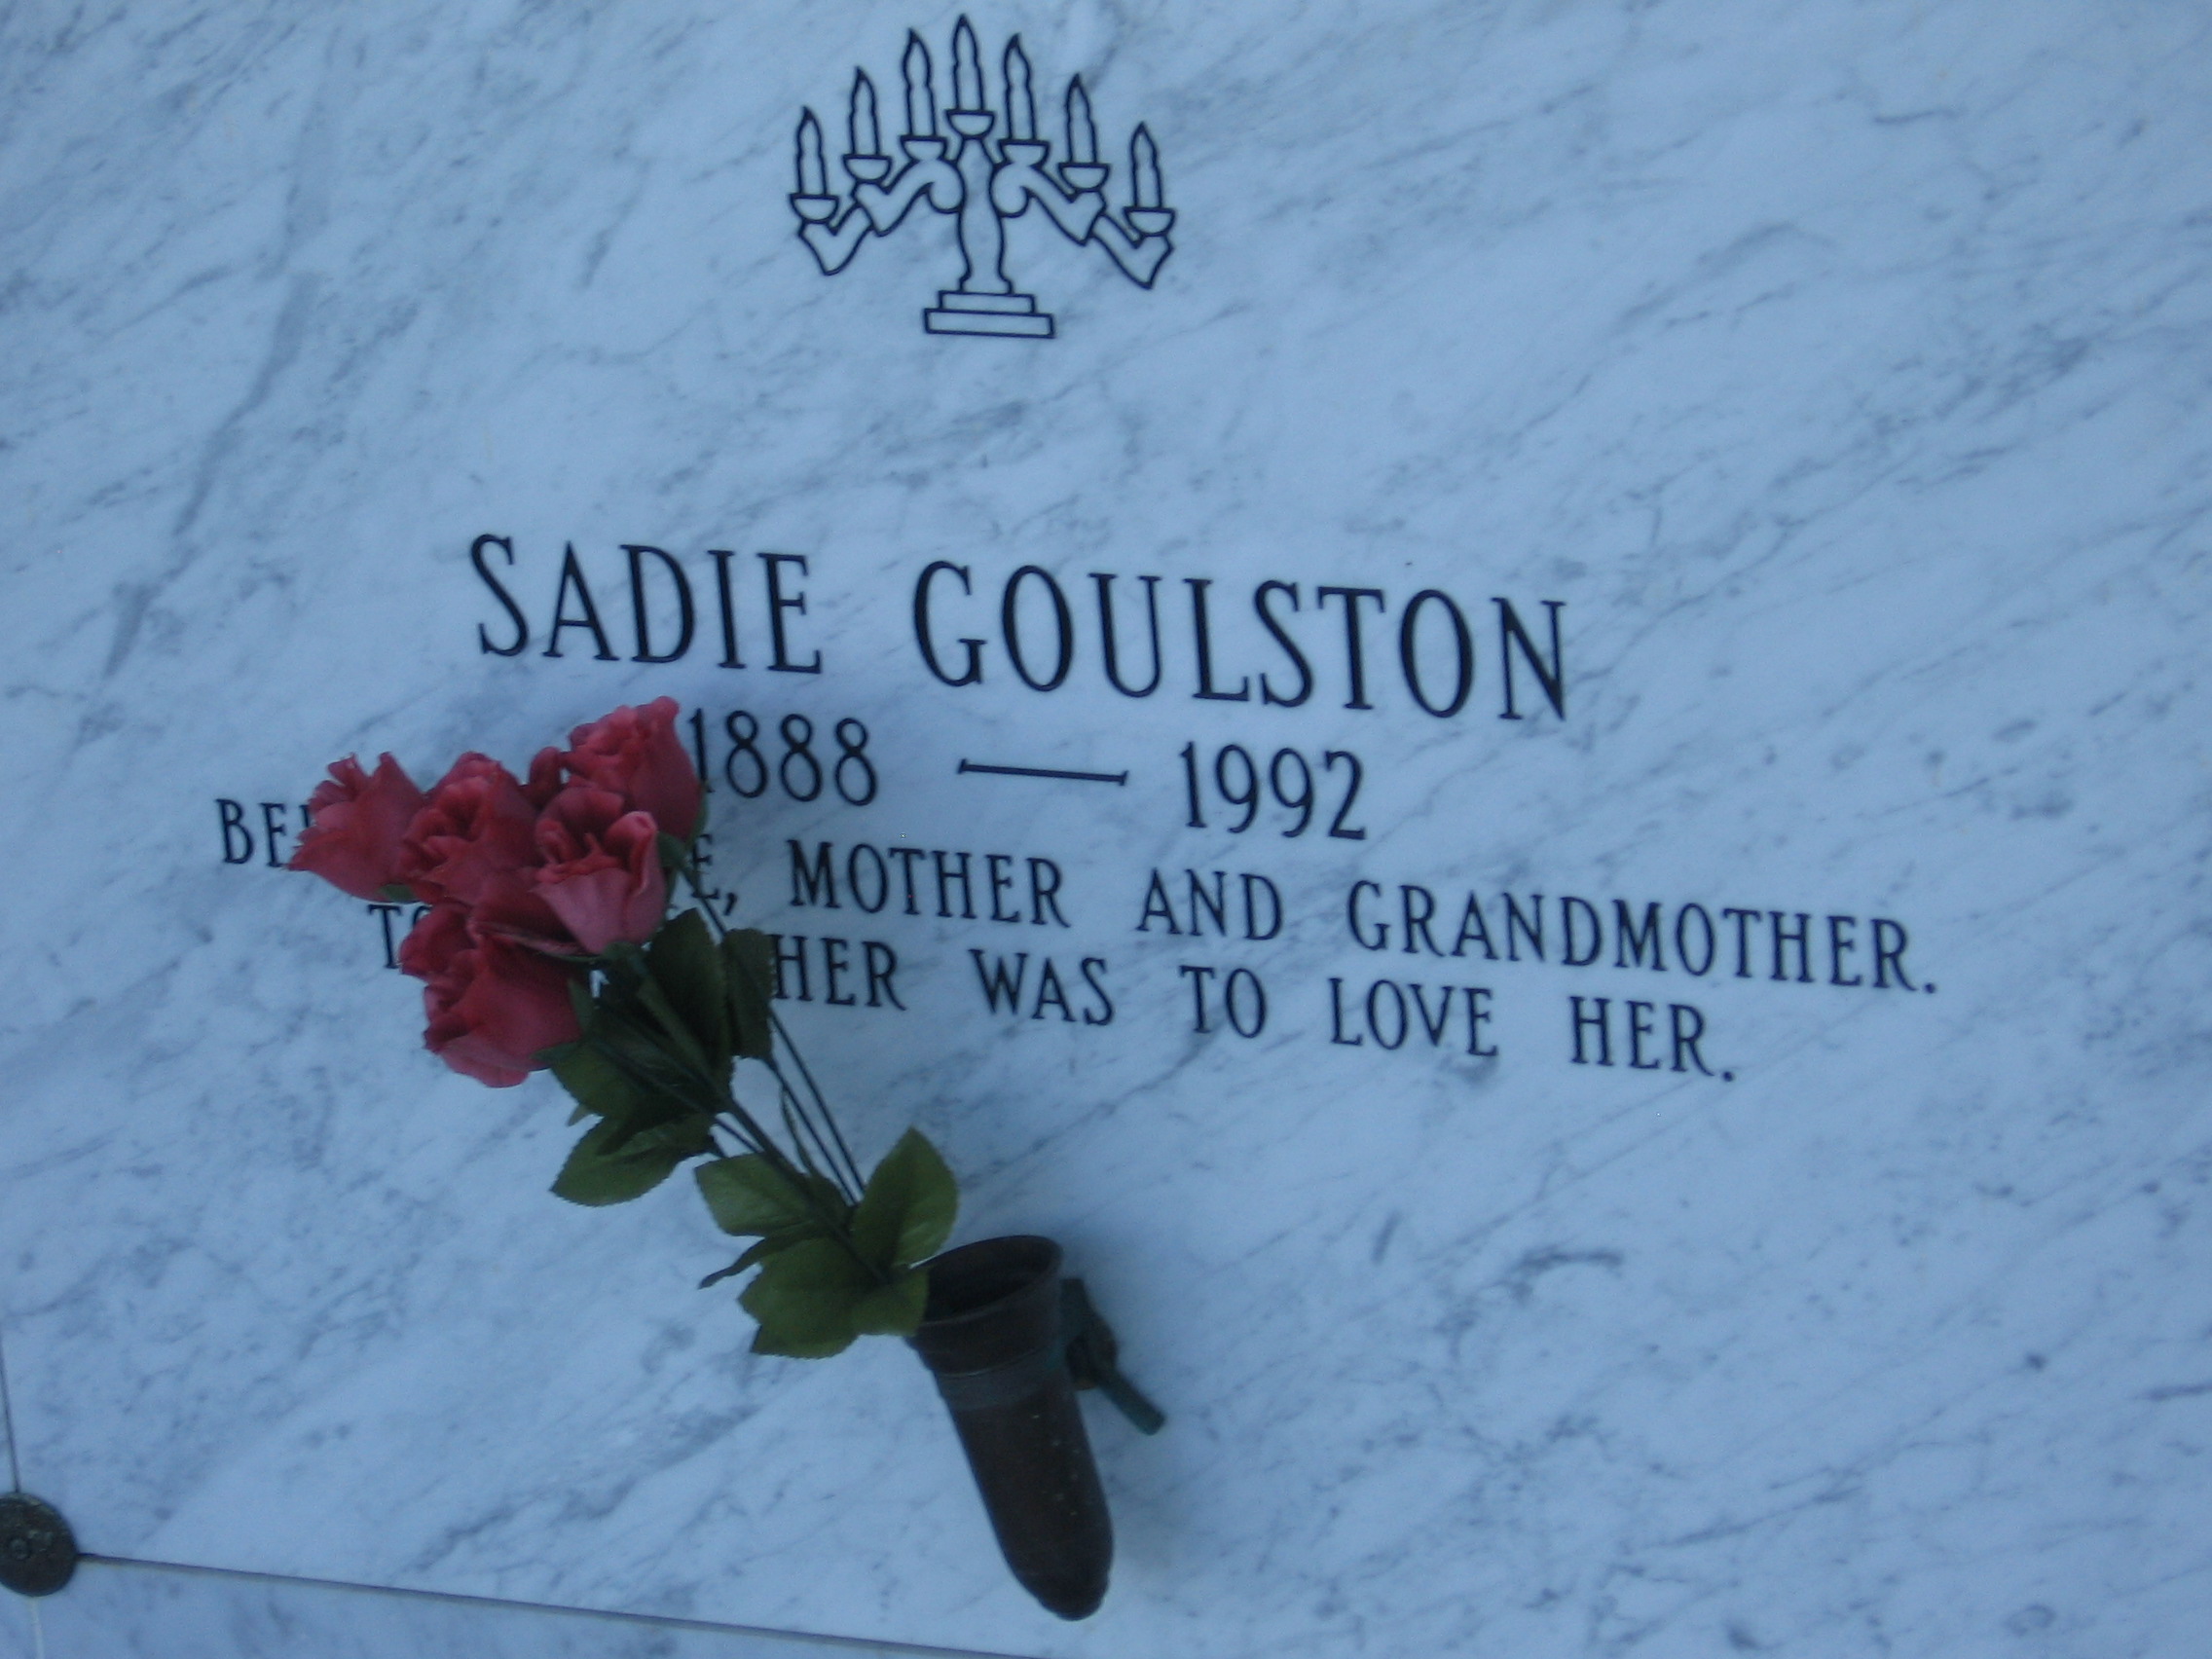 Sadie Goulston